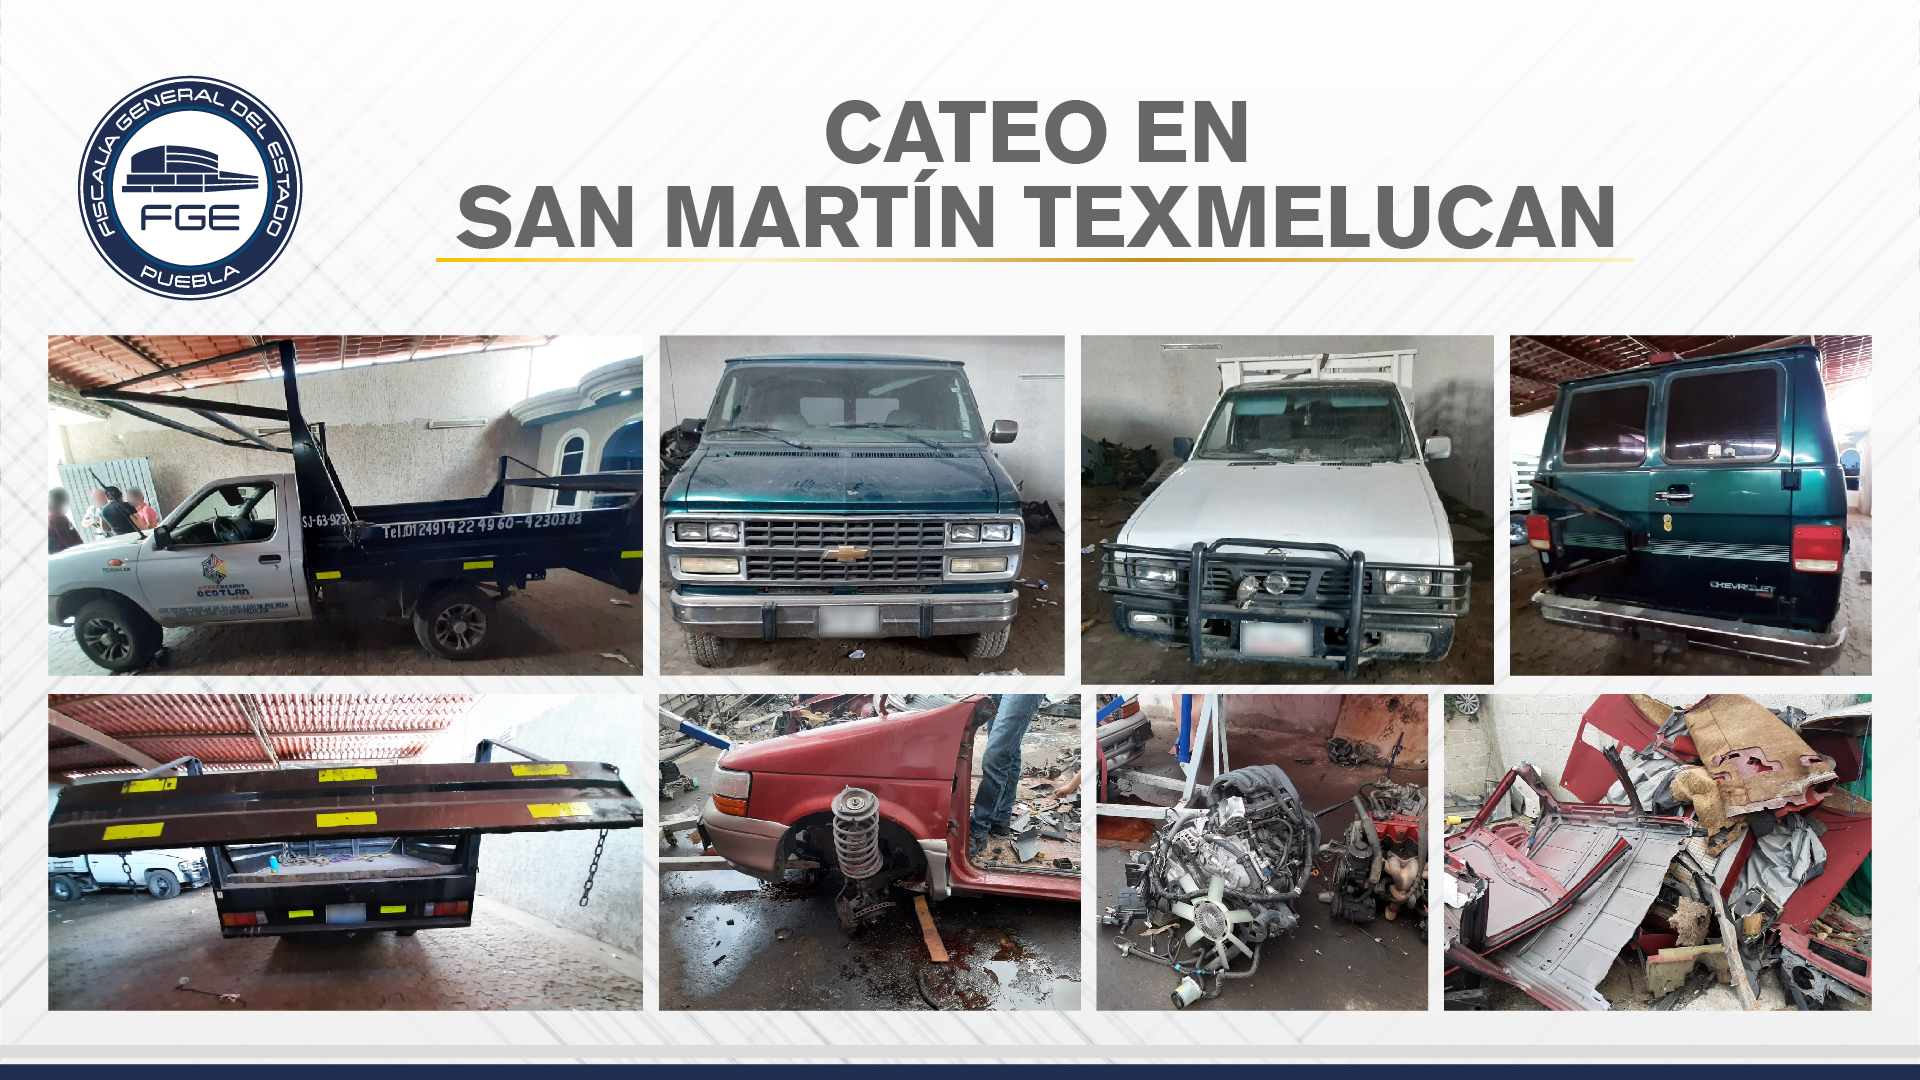 Aseguran vehículos y autopartes en cateos de San Martín